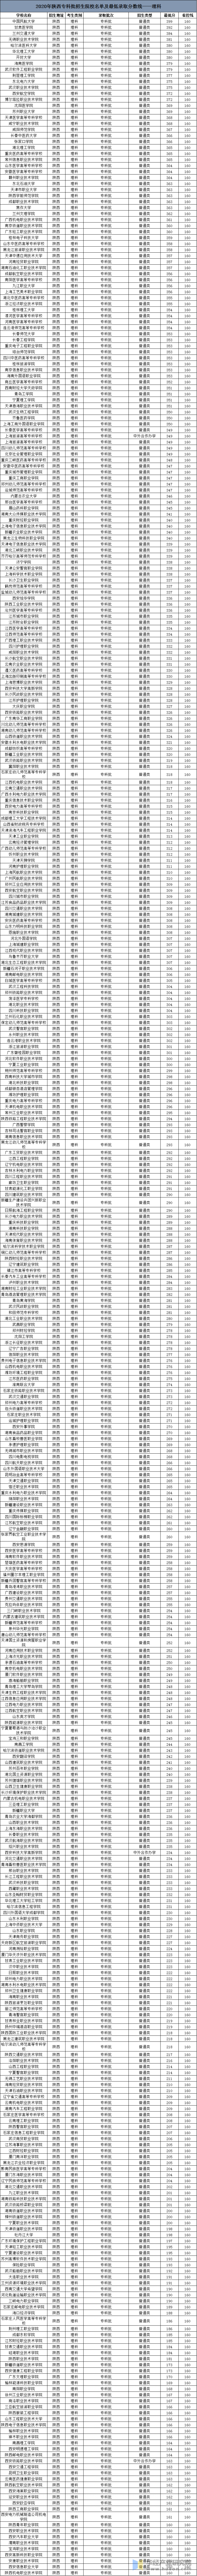 2020年陕西高考专科批招生院校名单及最低录取分数线——理科